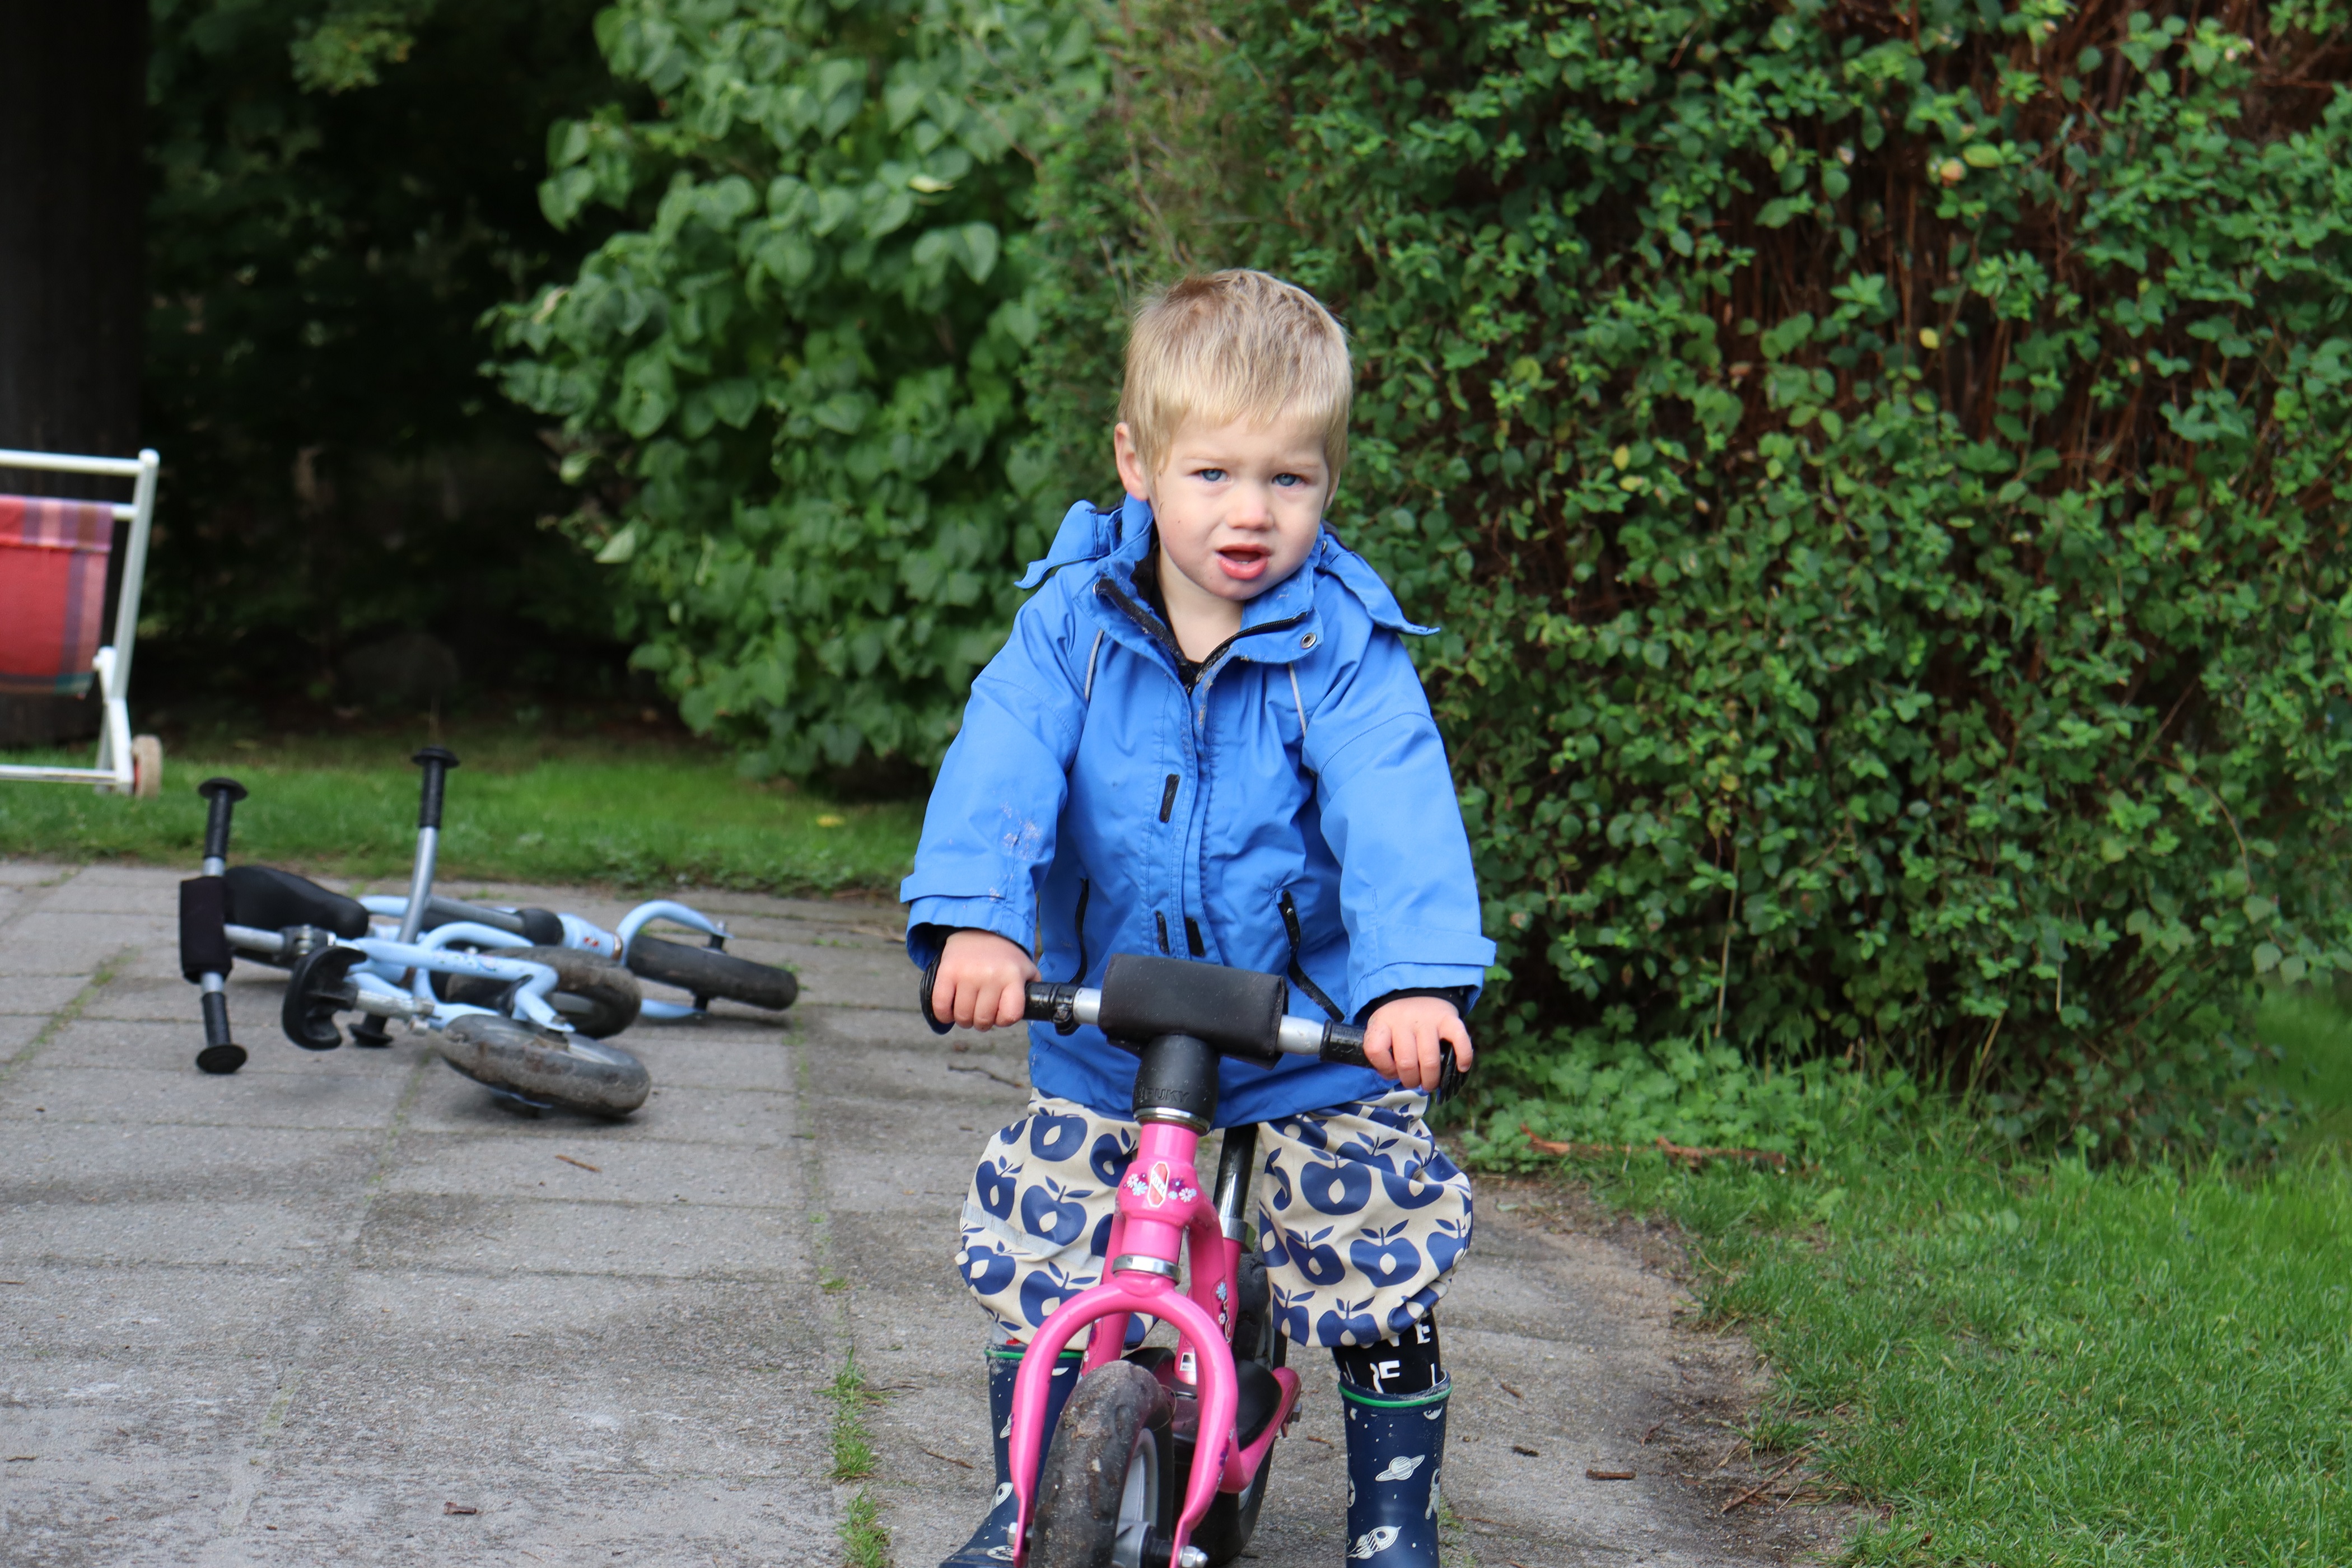 Vuggestuebarn kører med løbecykel udenfor